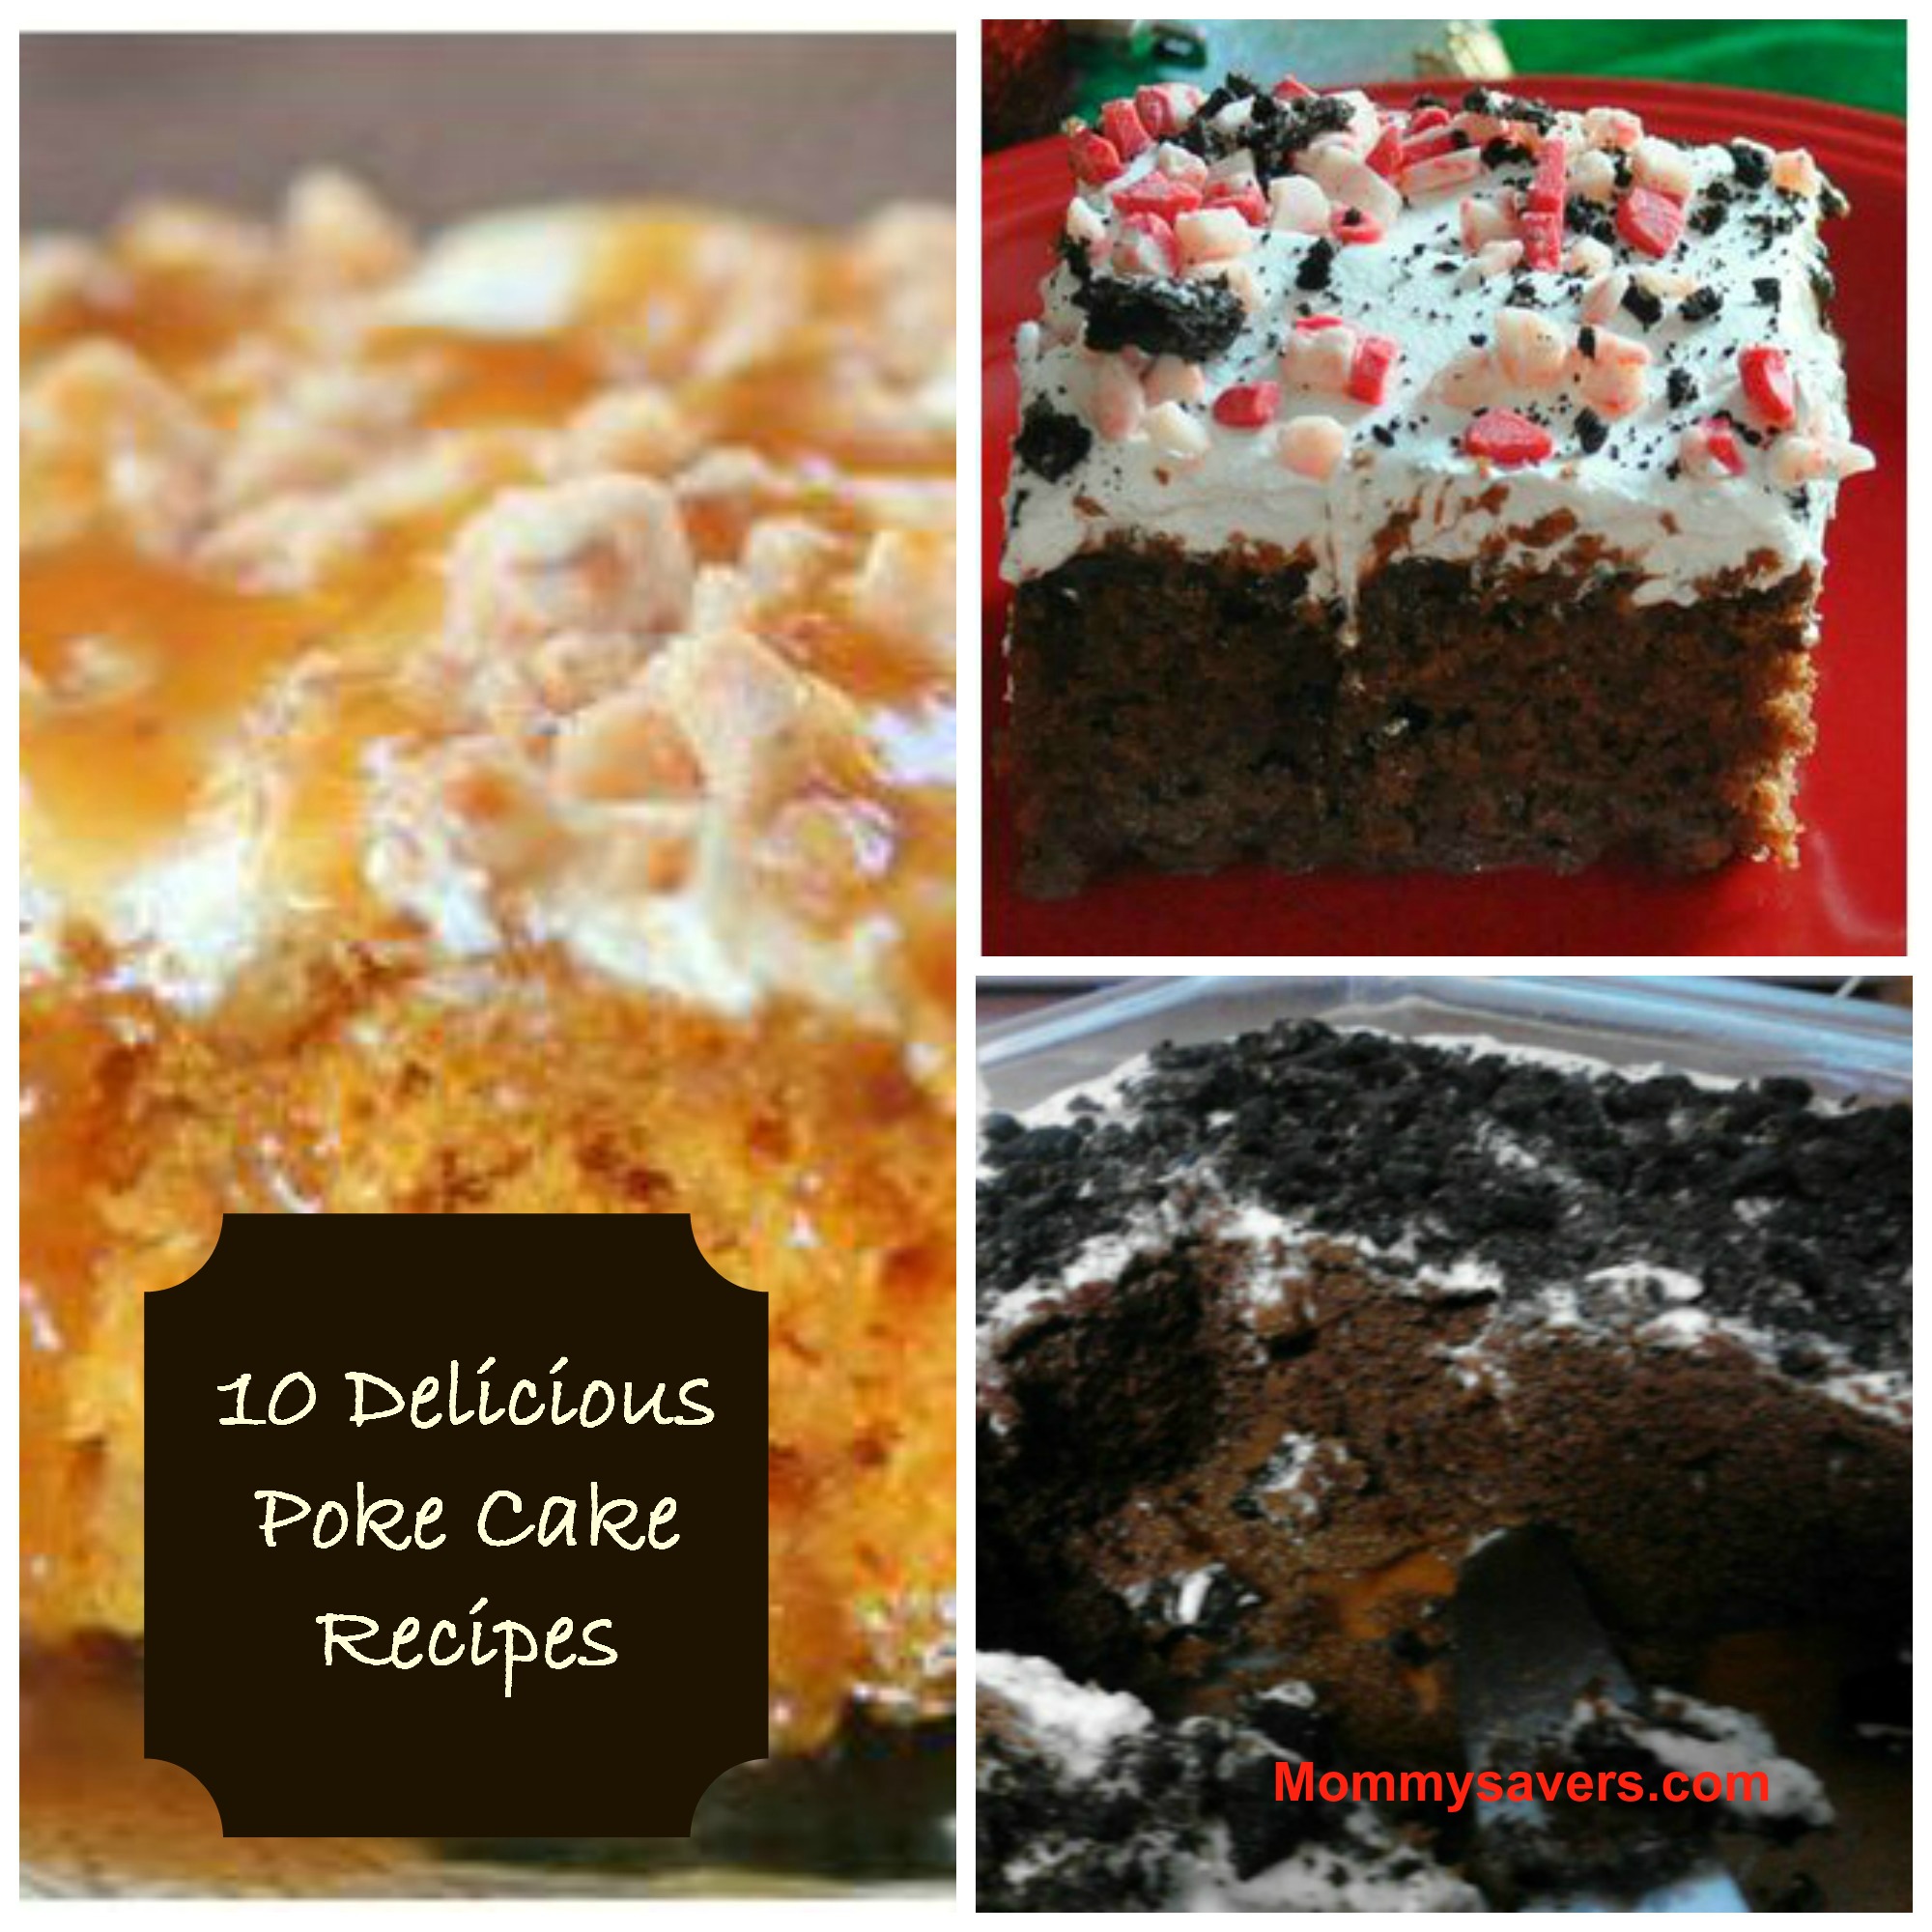 Poke Cake Recipes - Mommysavers